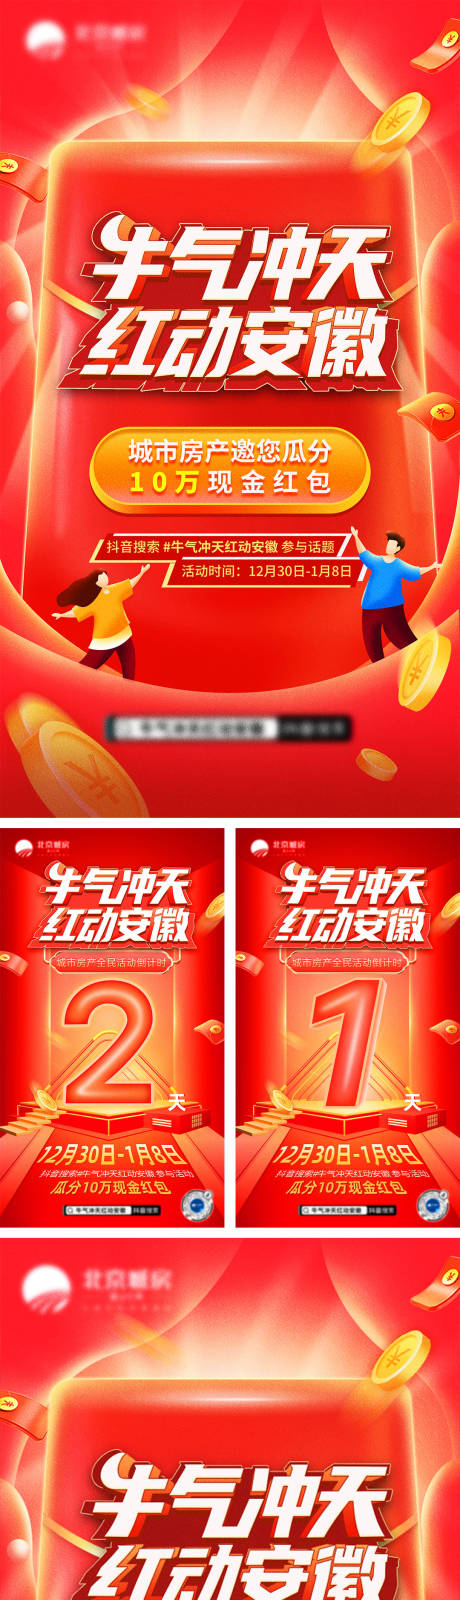 北京城房抖音话题挑战赛系列海报